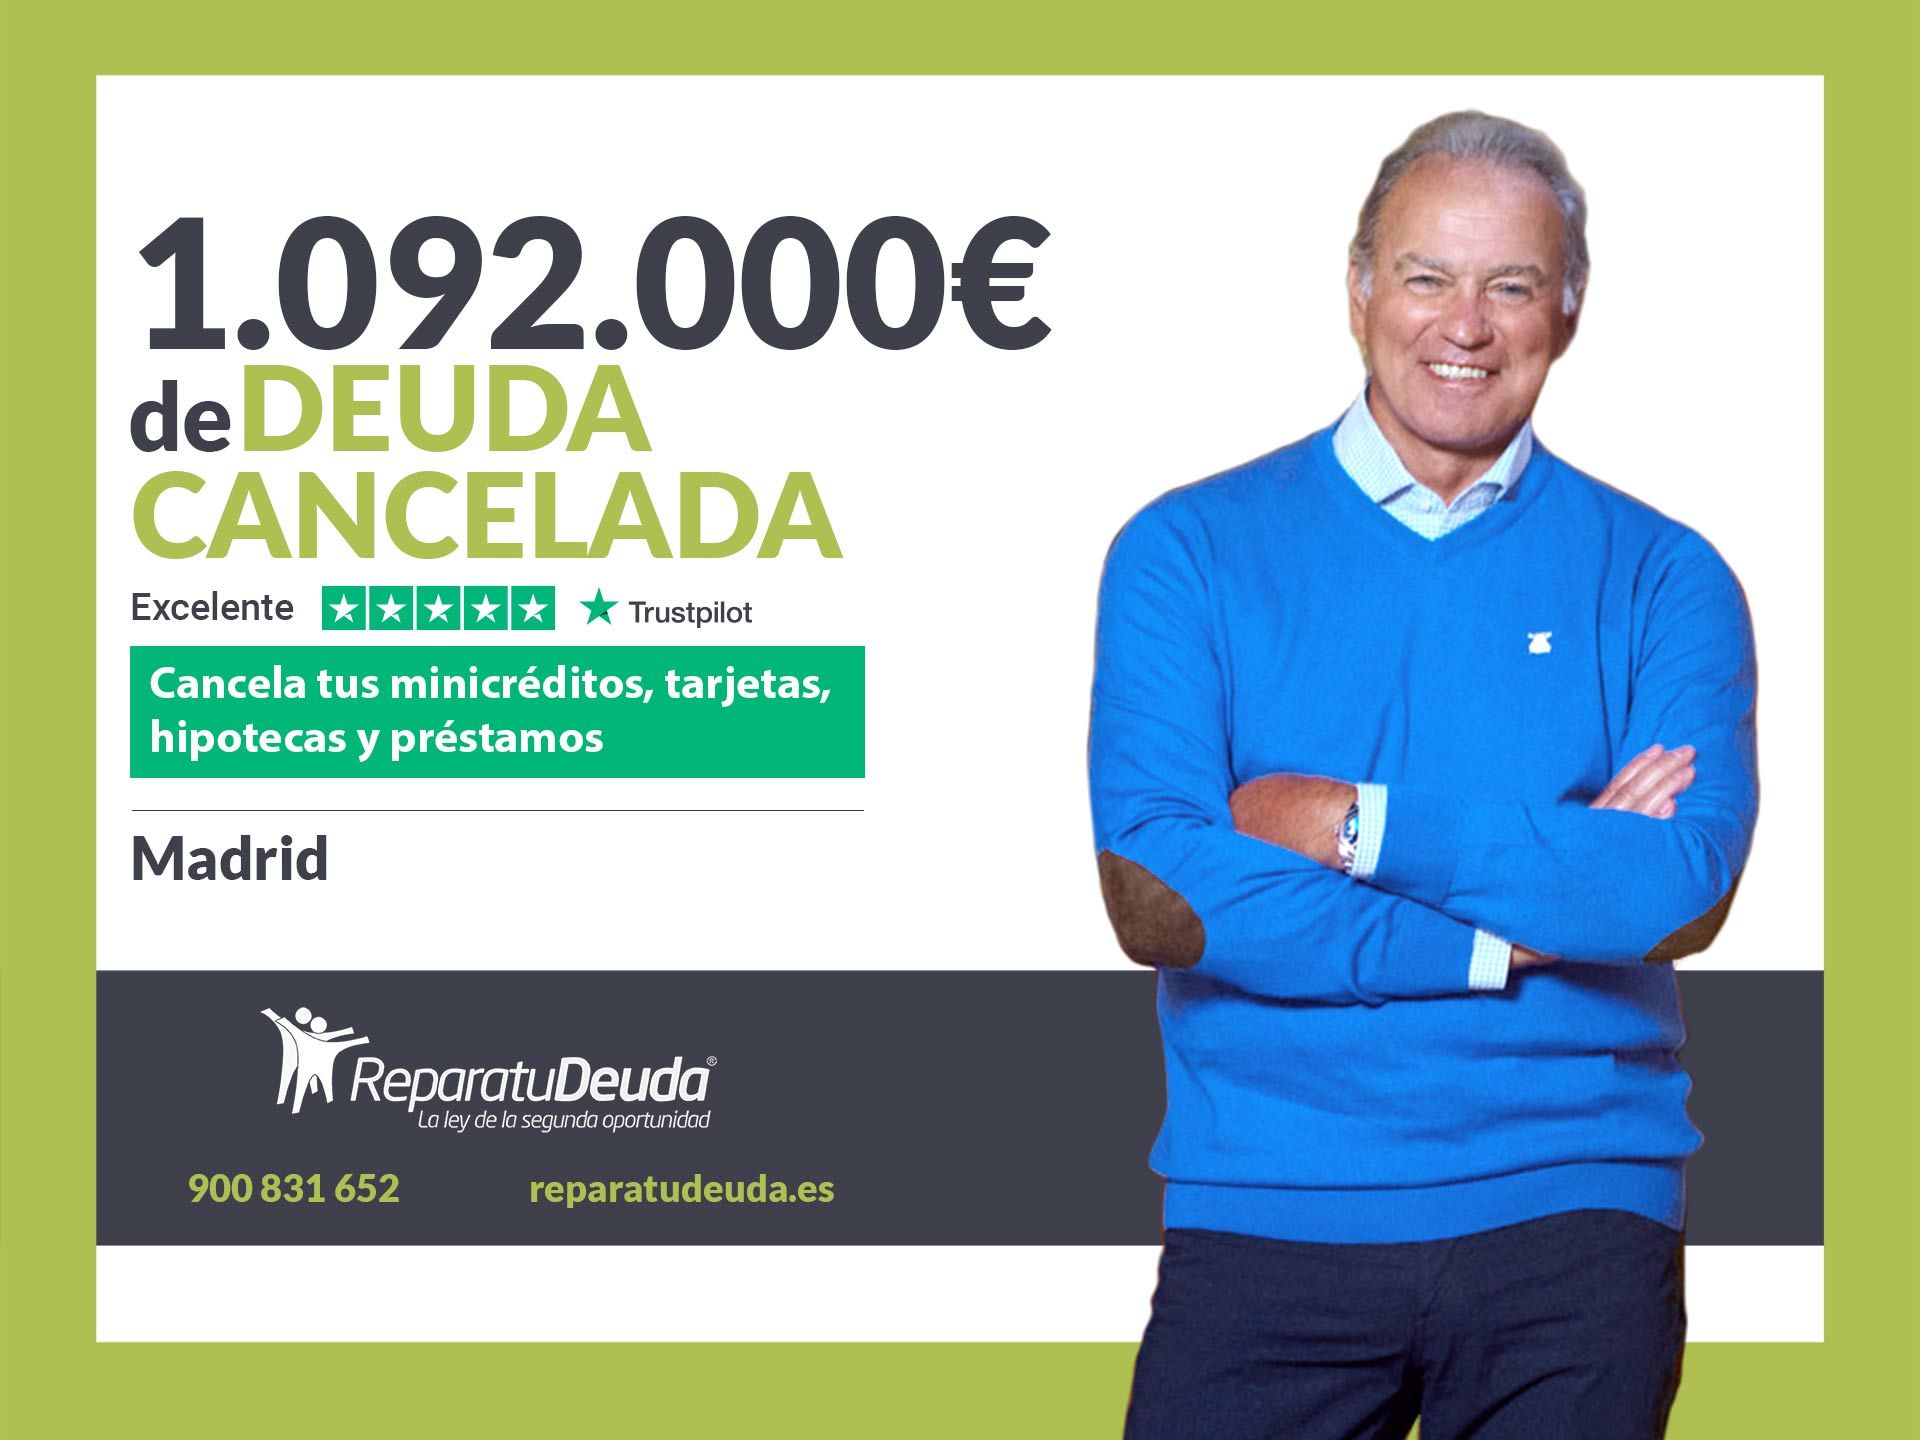 Repara tu Deuda Abogados cancela 1.092.000? en Madrid con la Ley de Segunda Oportunidad